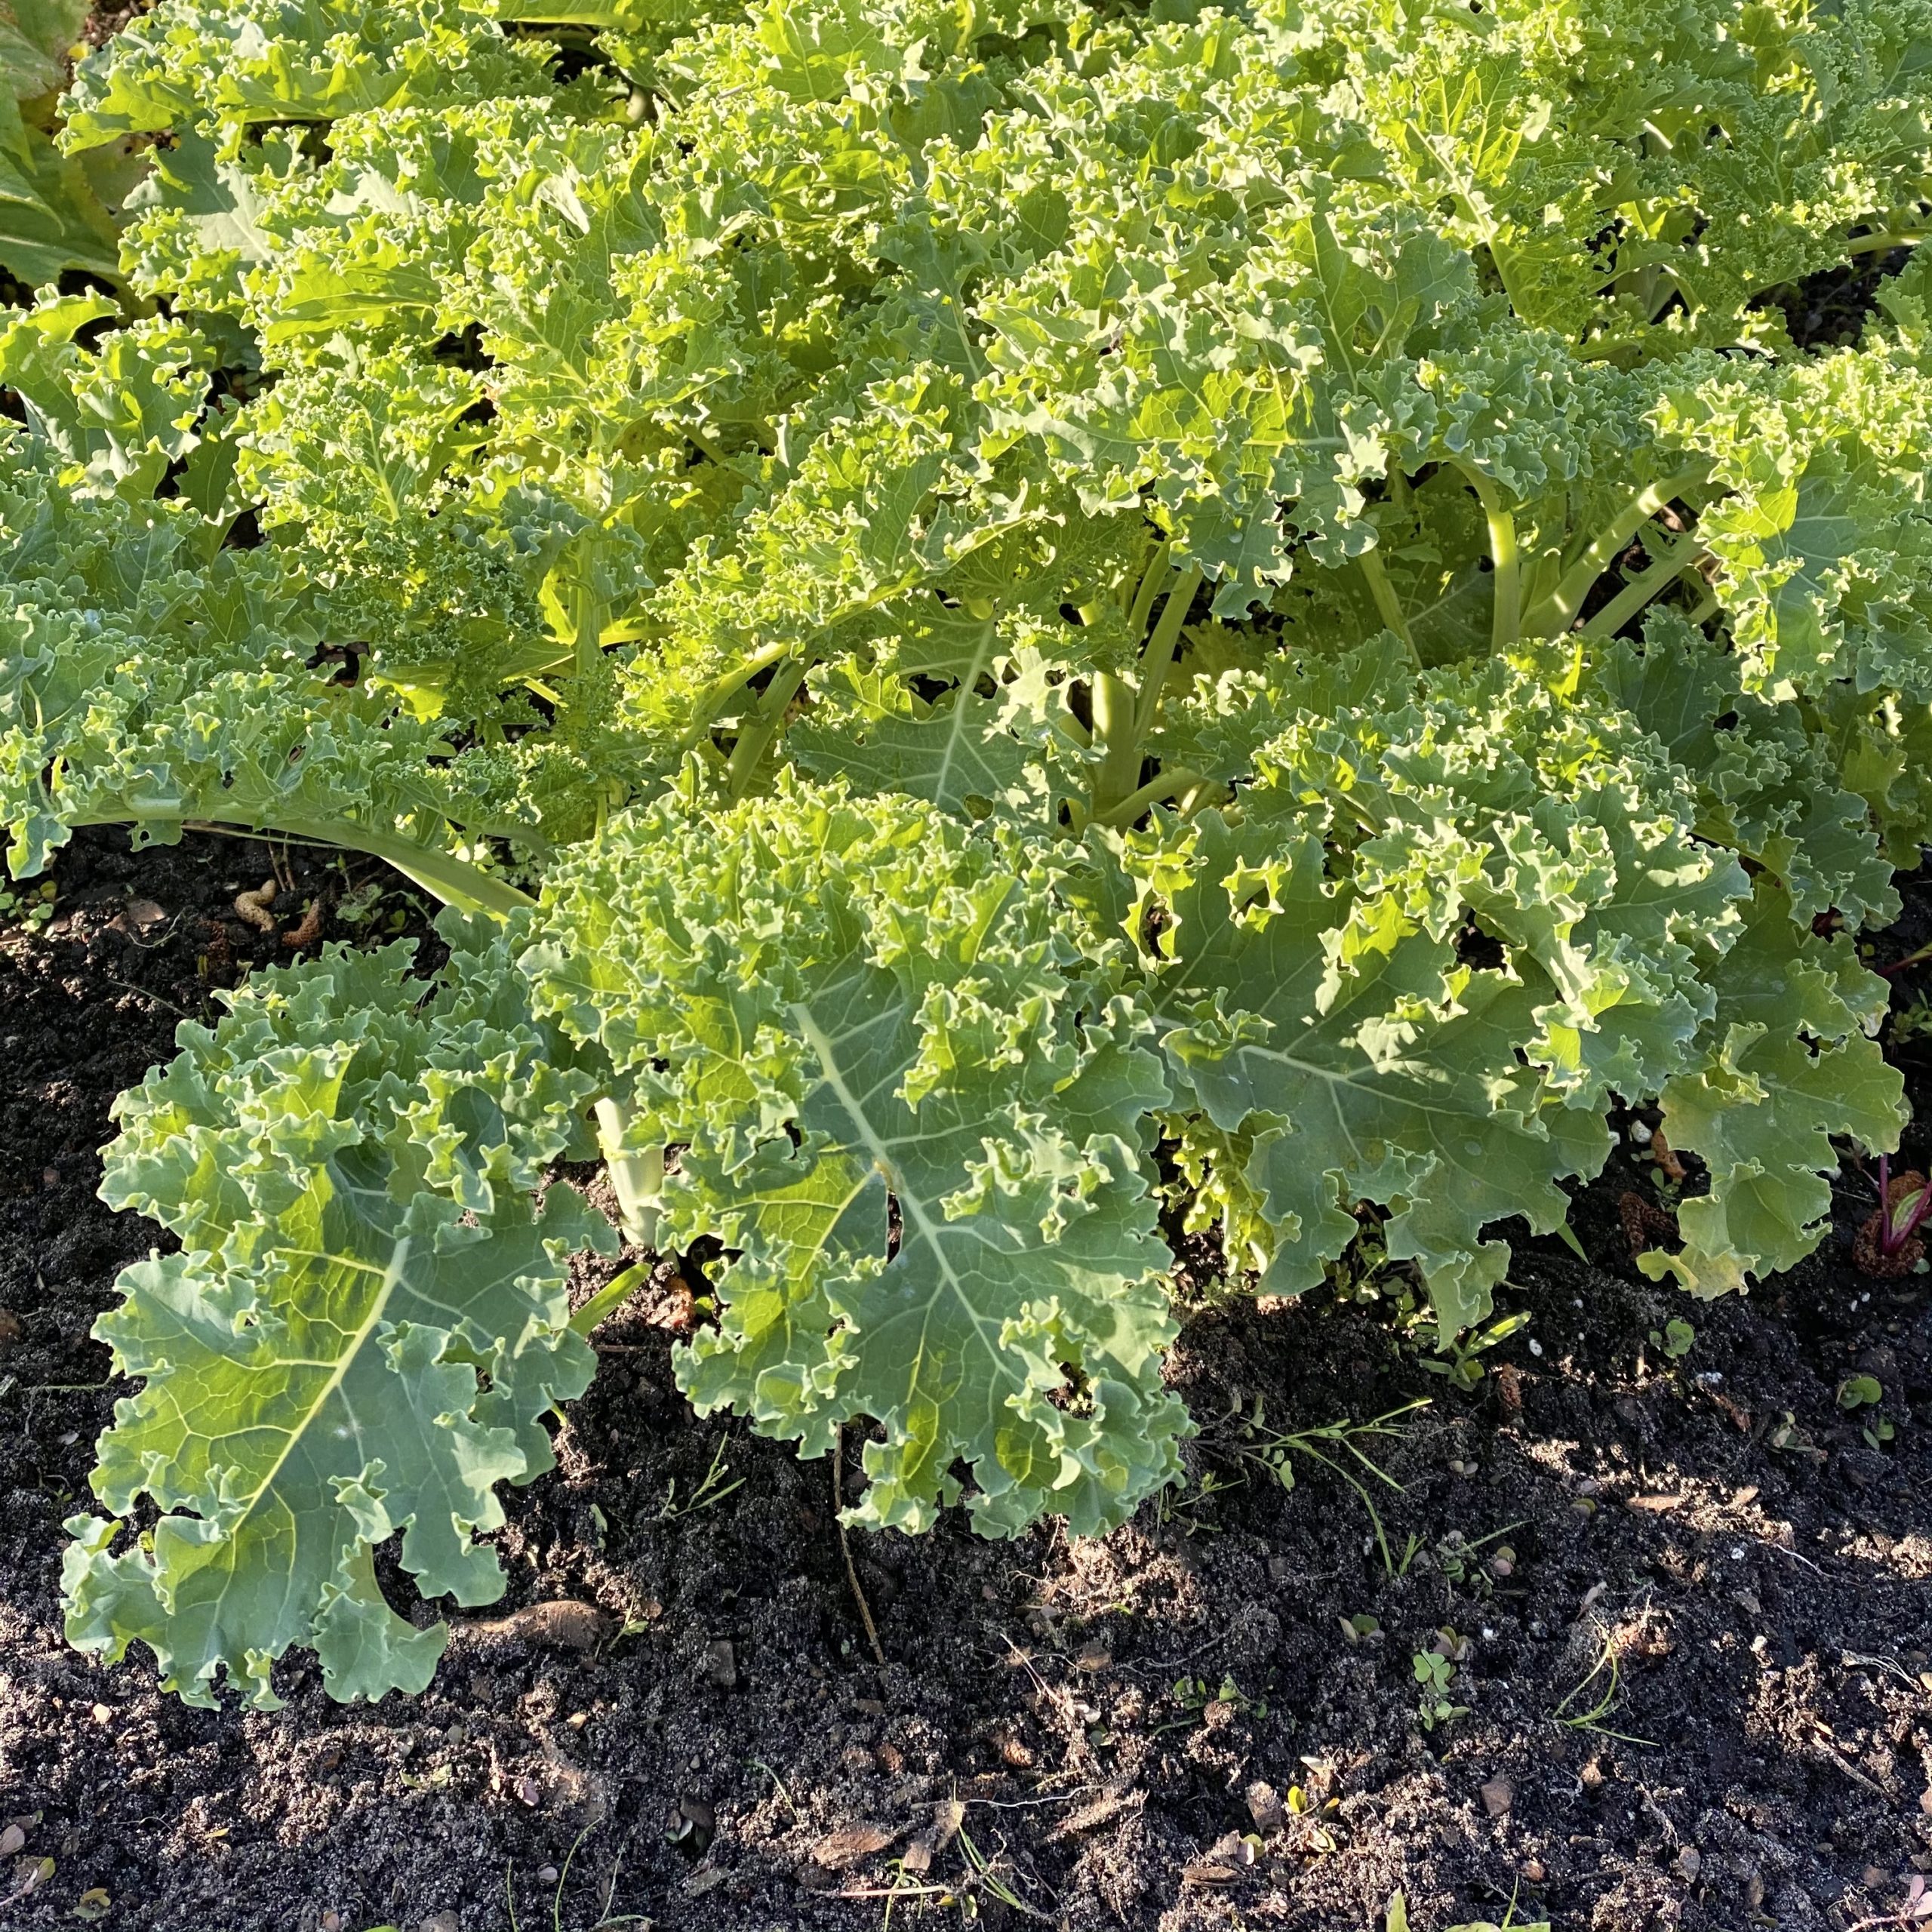 Kale growing in the garden.